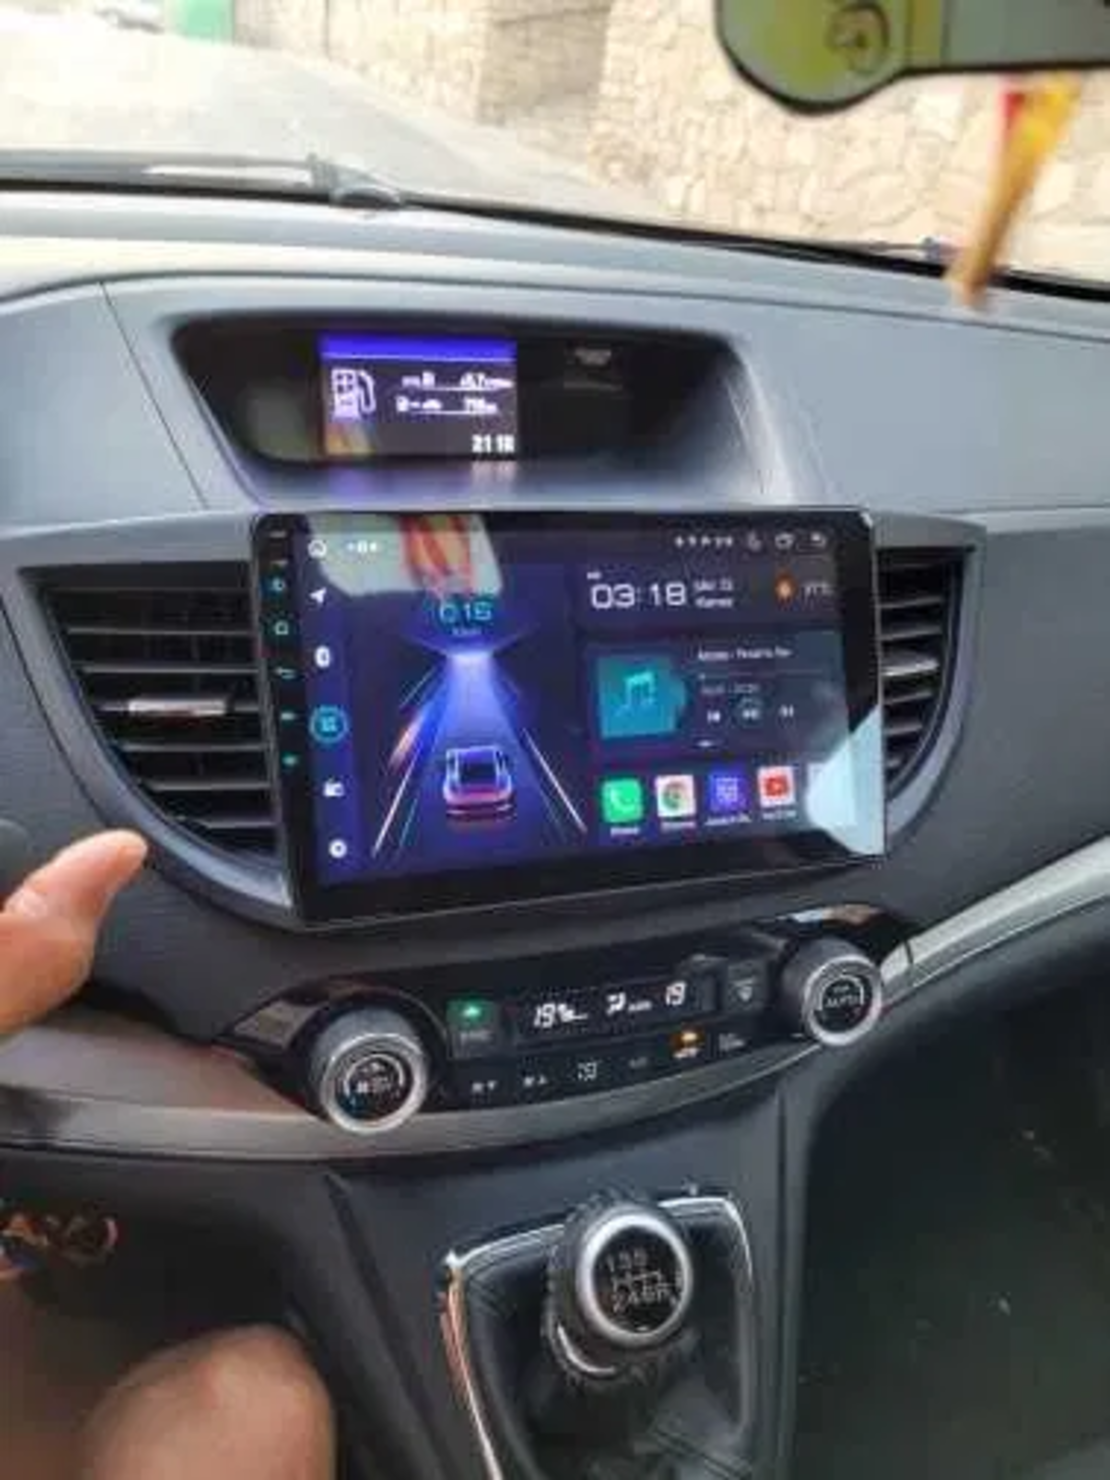 Honda CR-V 2012-2016 Android Multimedia/Navigation